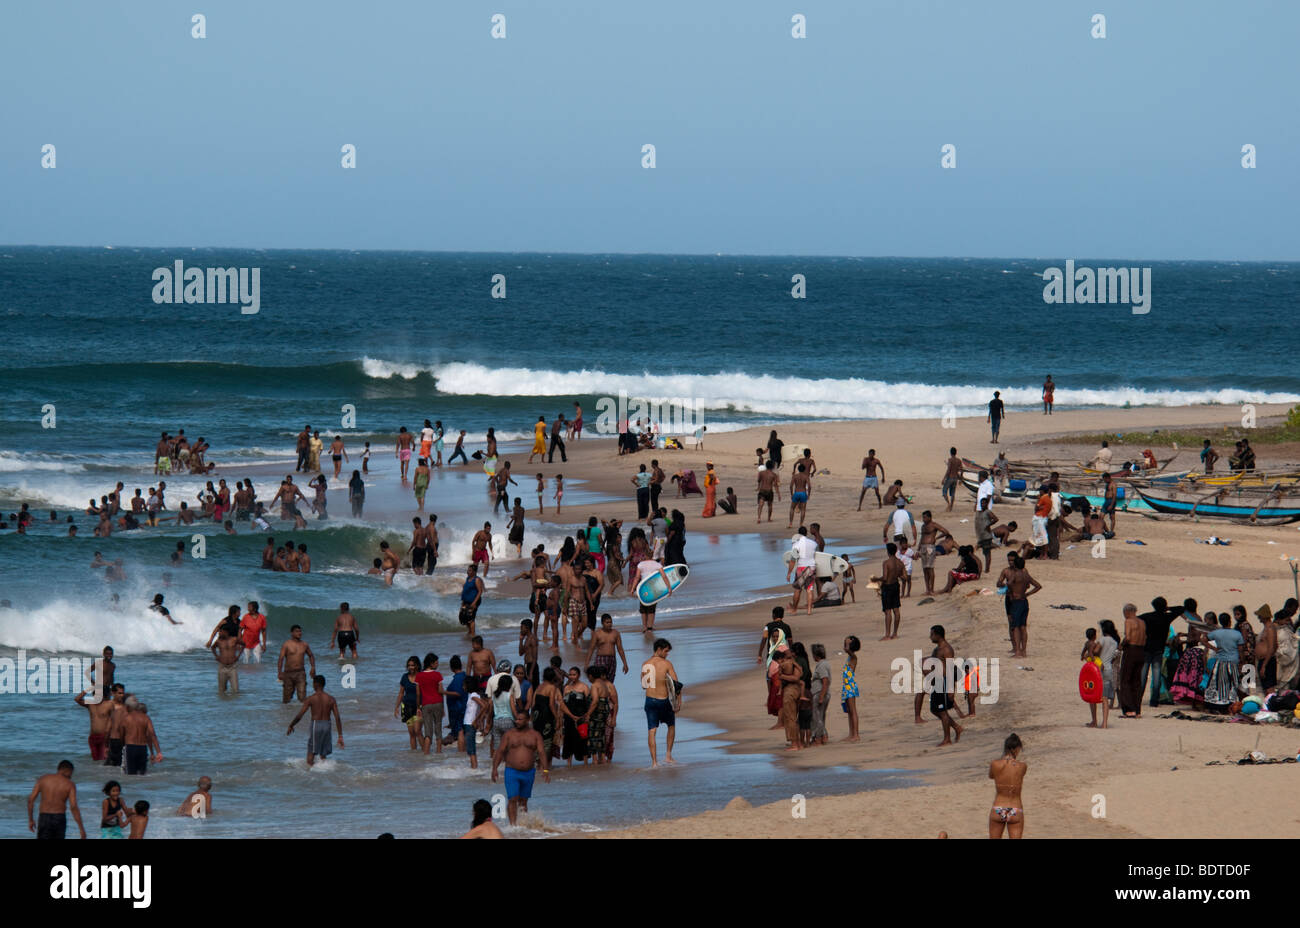 Arugam Bay Sri Lanka belebten Strand lokalen asiatischen indischen Ozean Meer Sand Menschen Ostküste Surfer Surfen surf Poya-Wochenende Boards Stockfoto